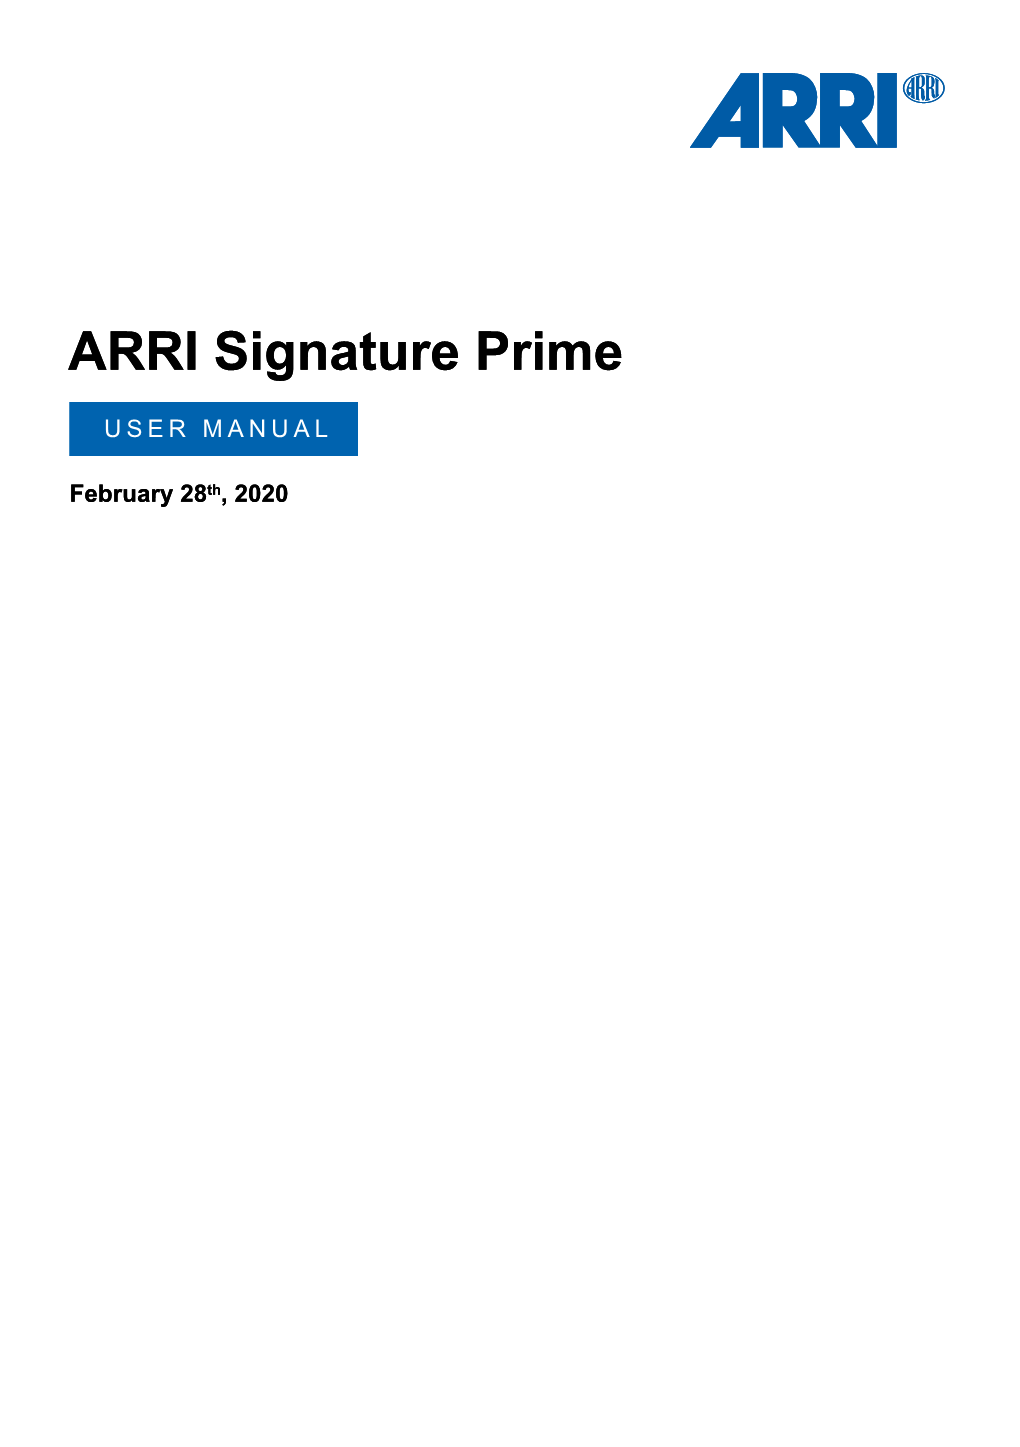 ARRI Signature Prime User Manual